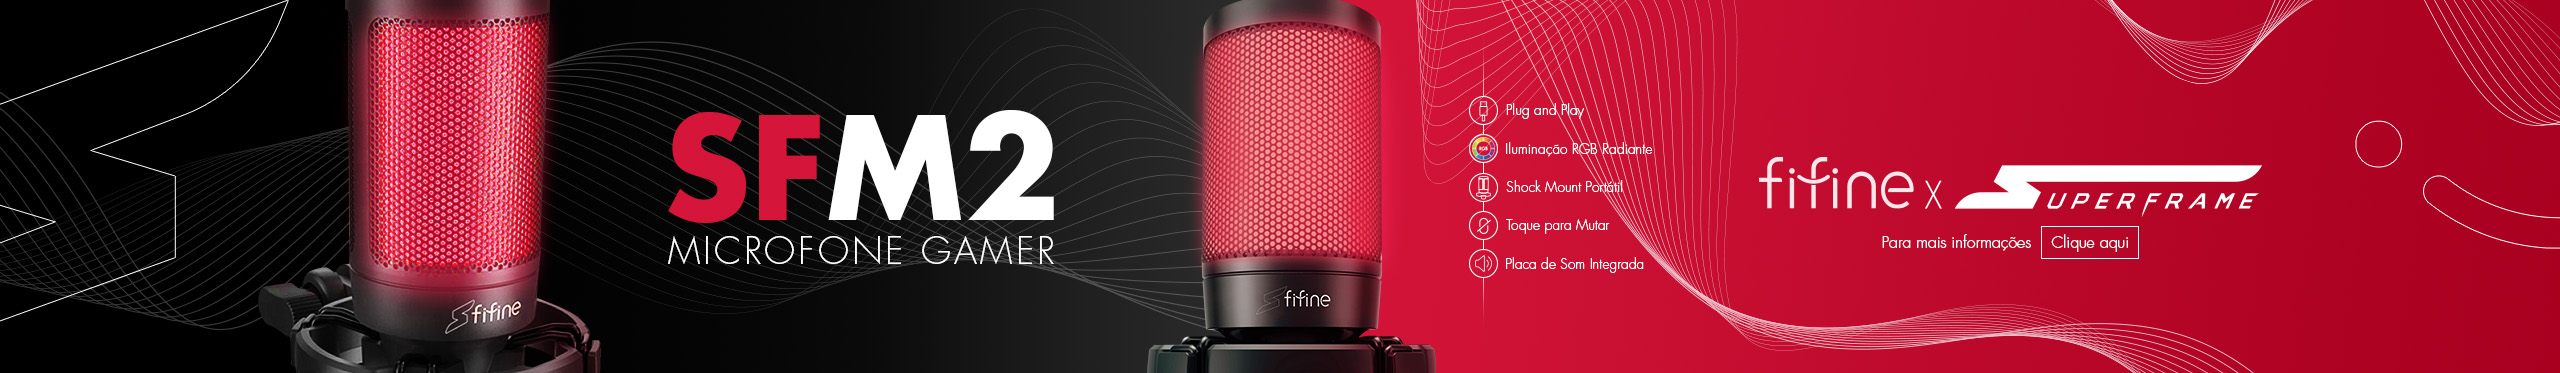 Microfone Superframe M2 | Qualidade impressionante Confira!